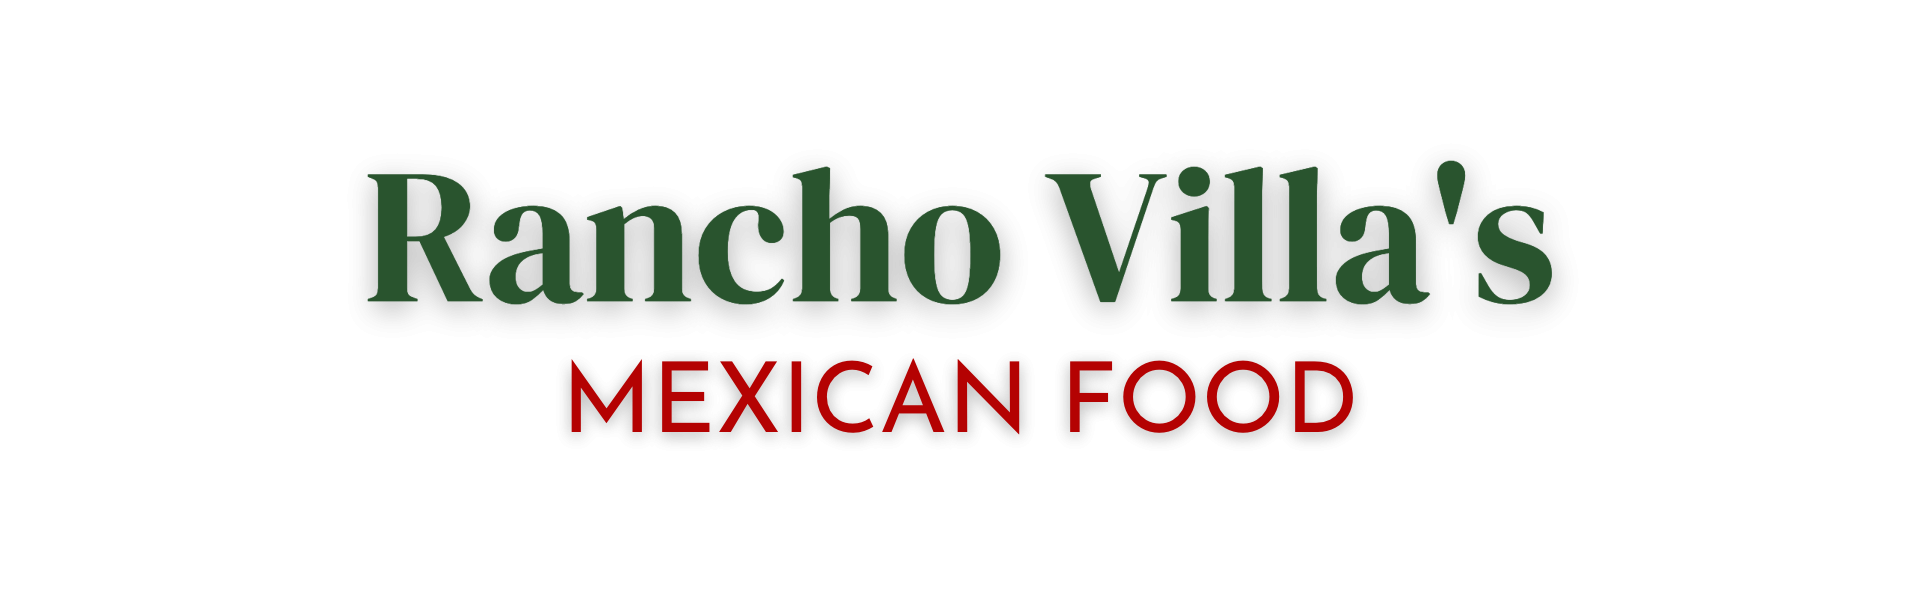 Rancho Villas Mexican Food